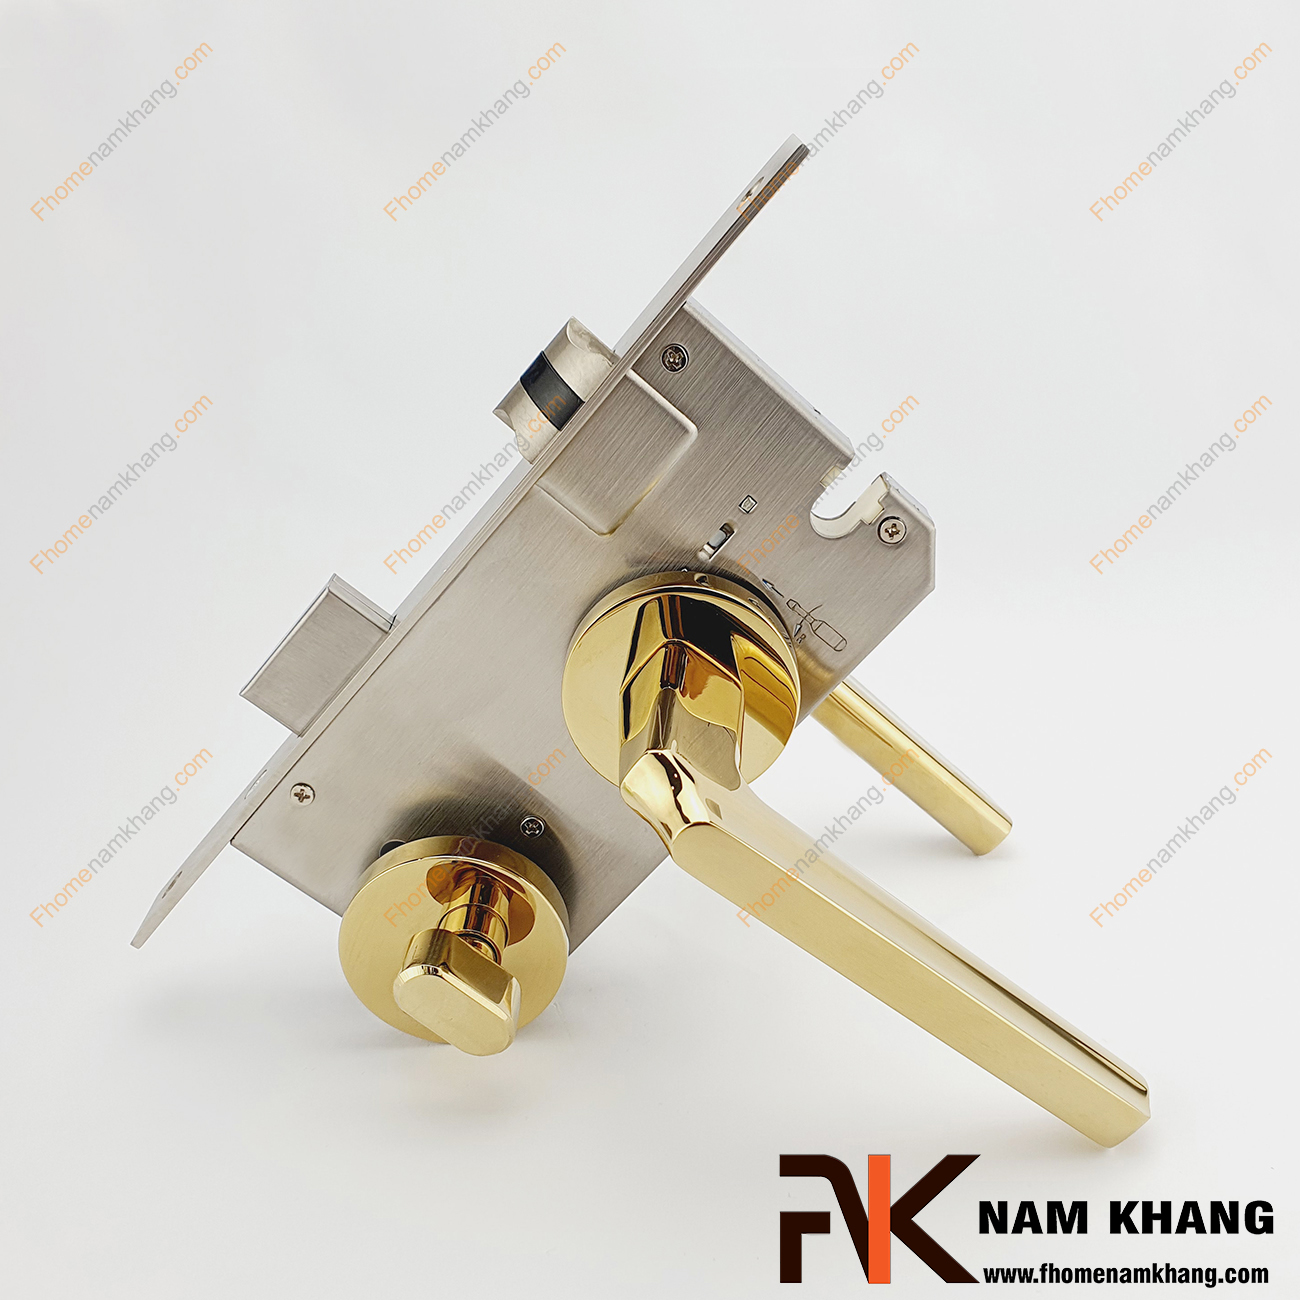 Khóa cửa phân thể bằng hợp kim cao cấp NK575-PVD có thiết kế phần ốp khóa và tay gạt riêng biệt, khá nhỏ gọn và tạo được sự nổi bật độc đáo của một dòng khóa cửa.